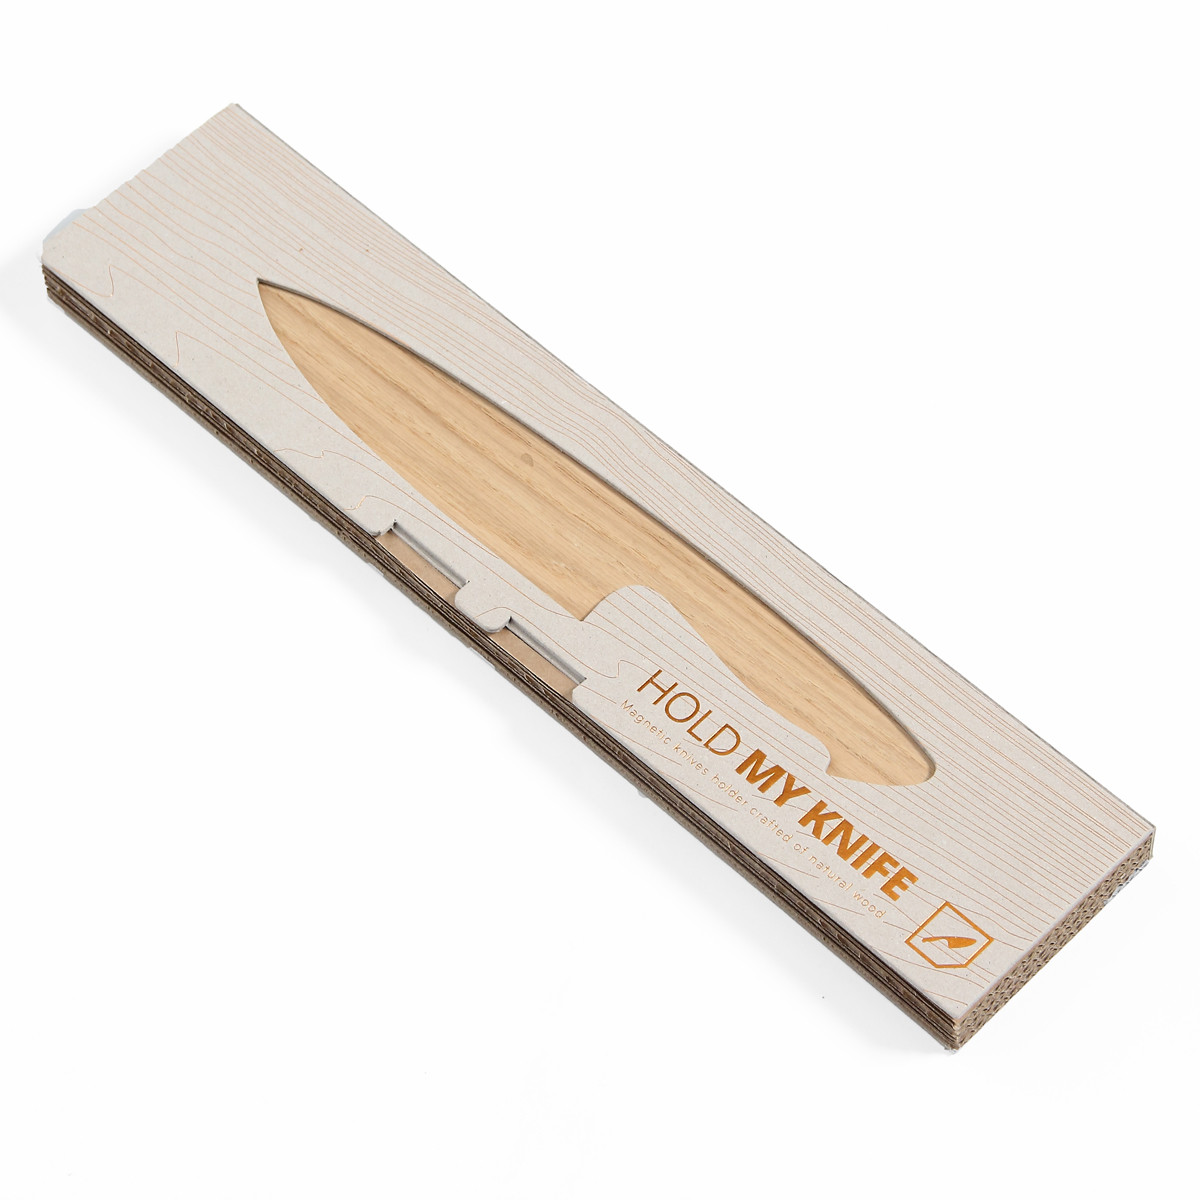 Porte-couteau magnétique, barre porte-couteau magnétique, 44,5 cm CLOEN